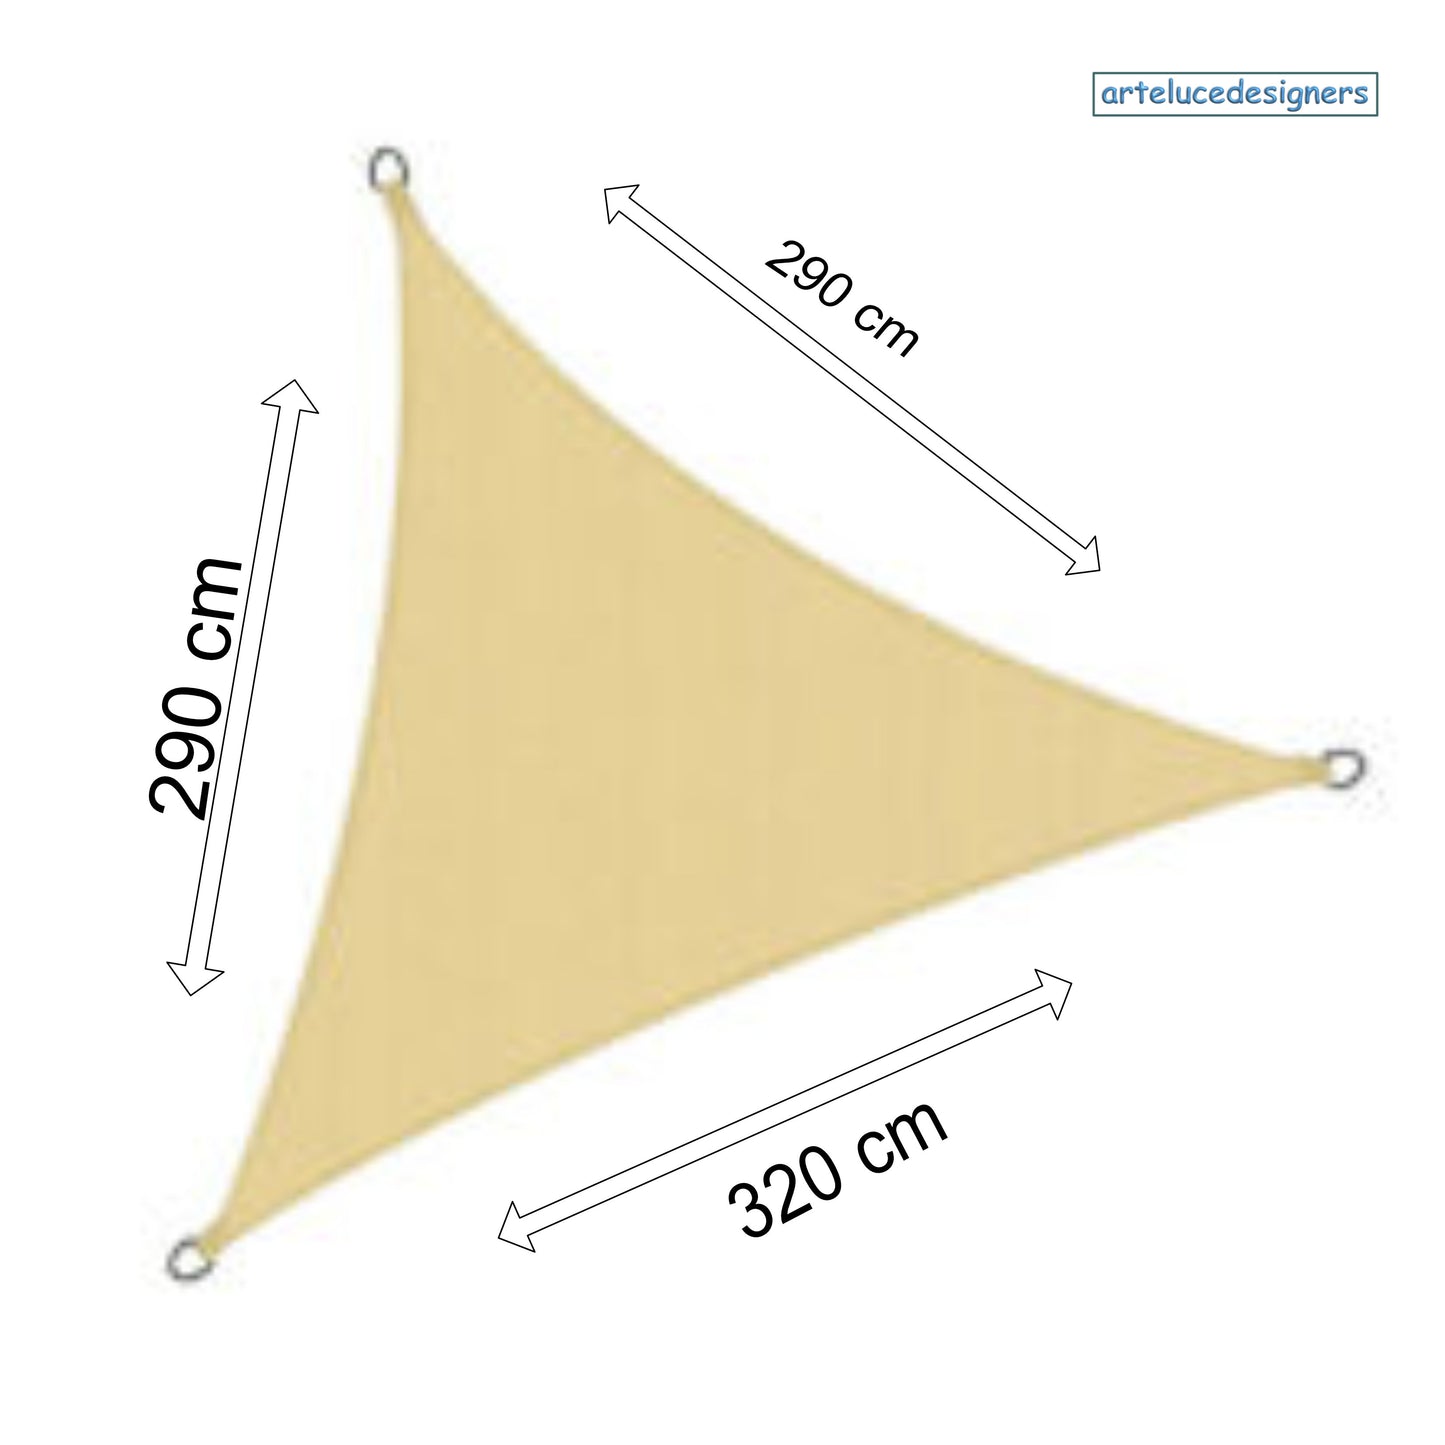 tenda parasole vela triangolare beige ombreggiante da esterno telo impermeabile